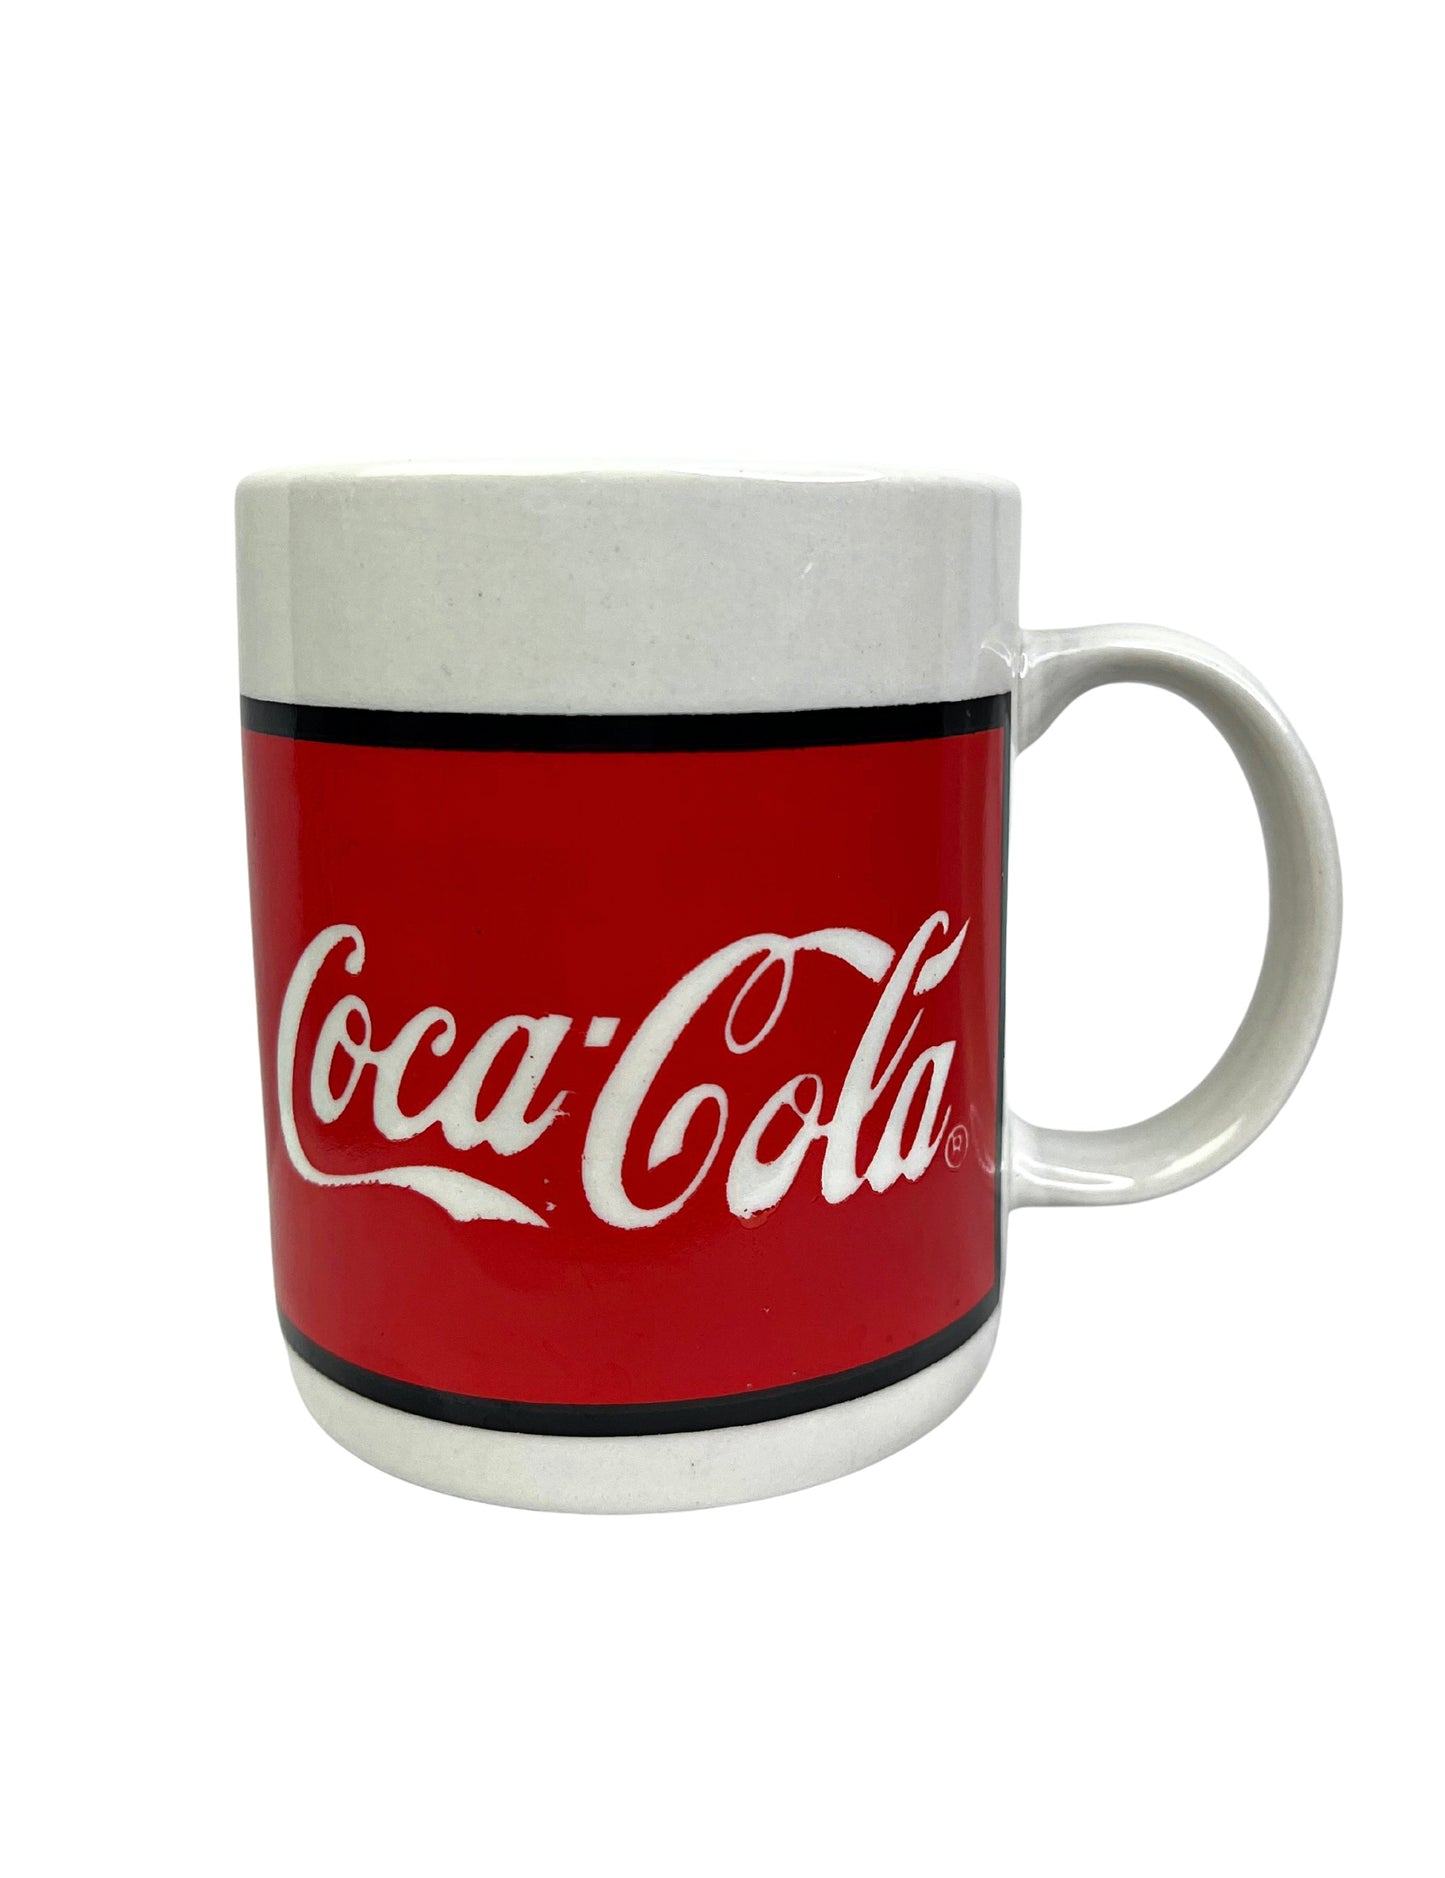 1996 Coca-Cola Gibson 12oz Coffee Mug